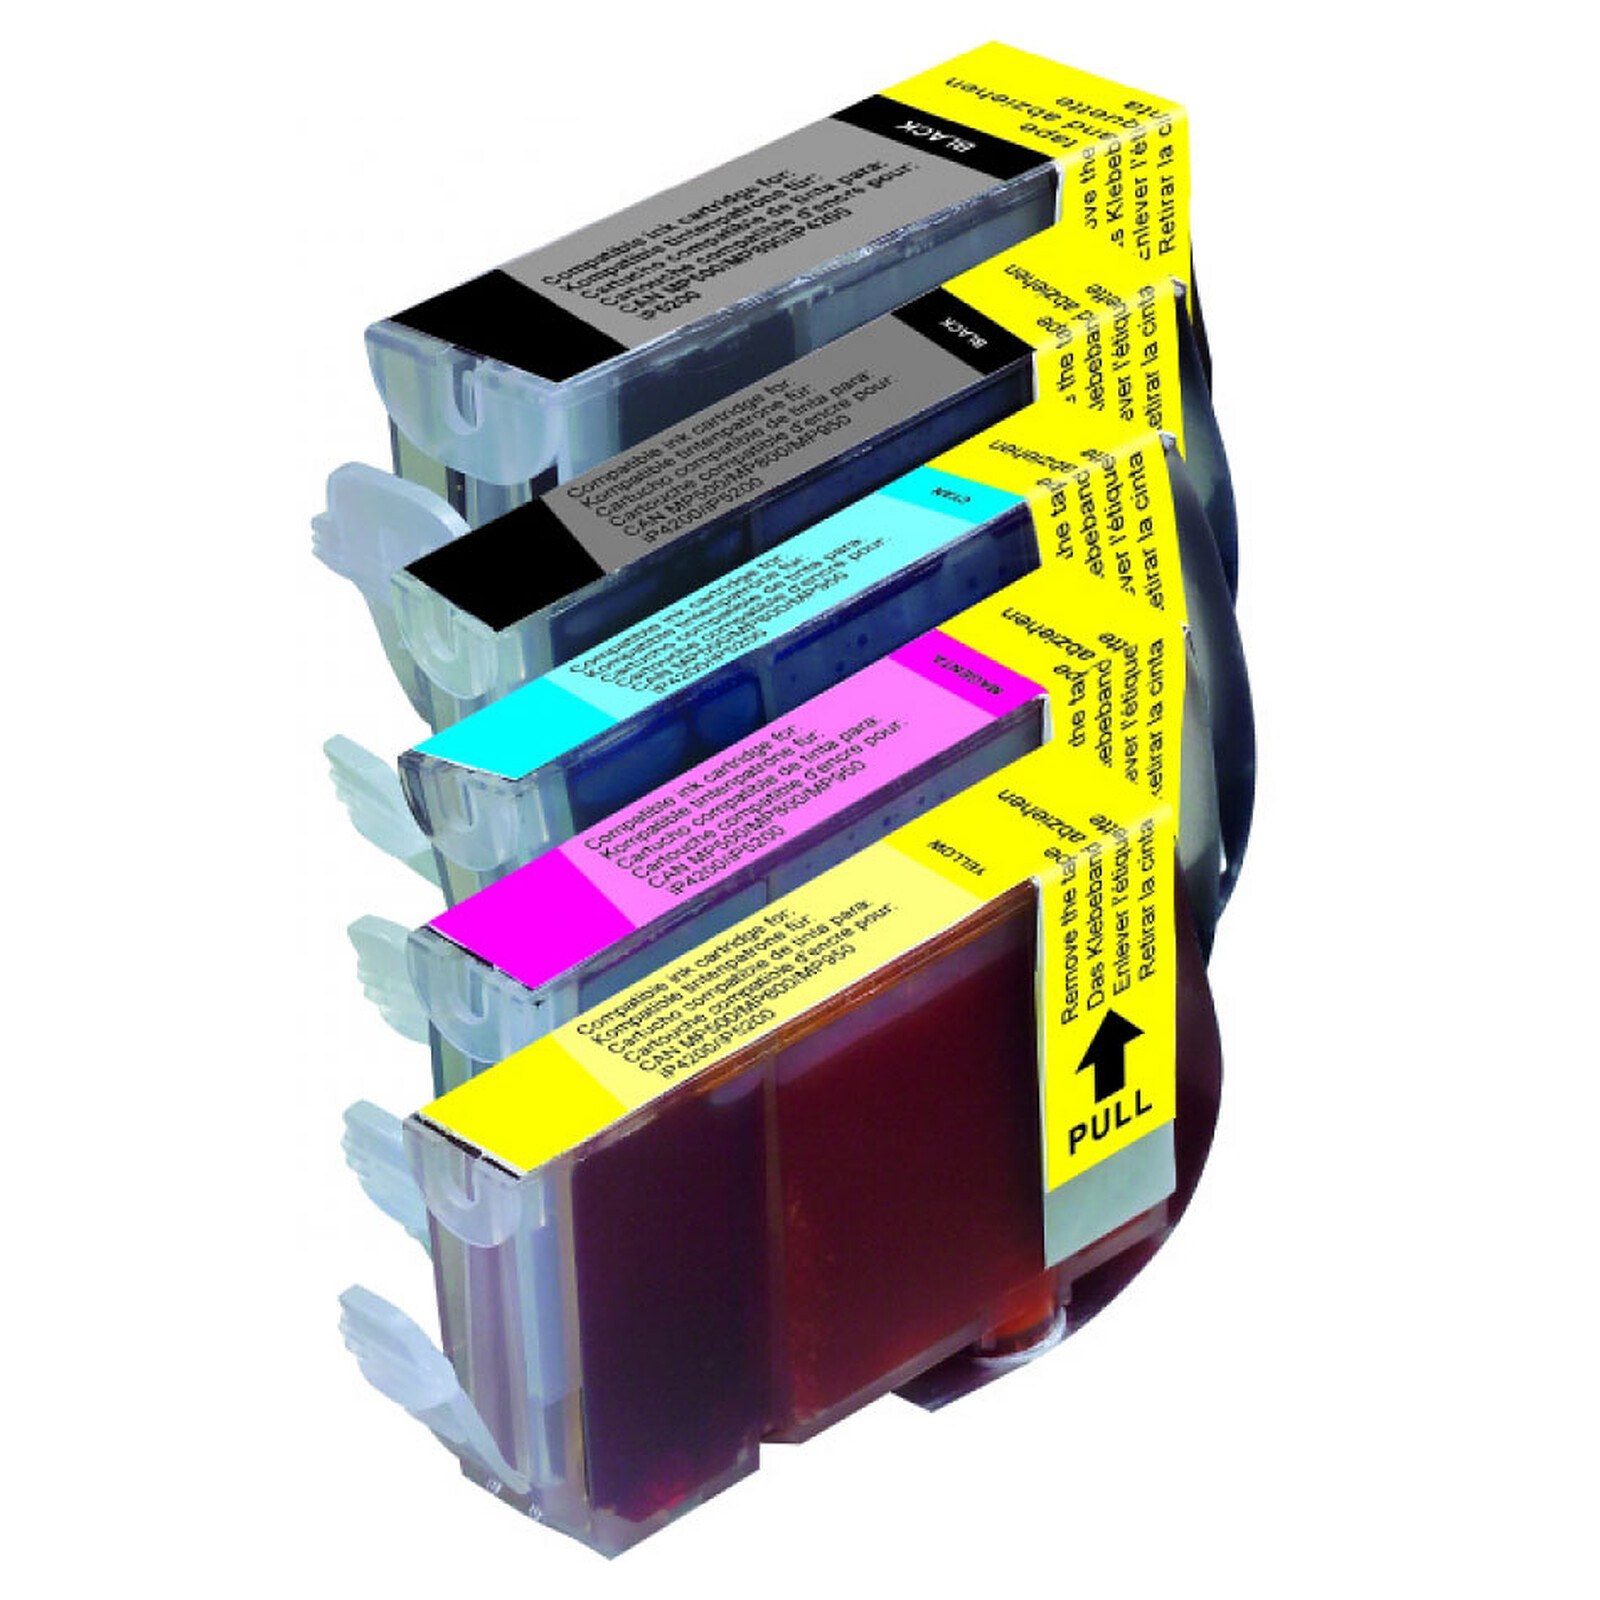 Pack de 5 cartouches C-581XXL 2BK/C/M/Y - Cartouche imprimante - LDLC